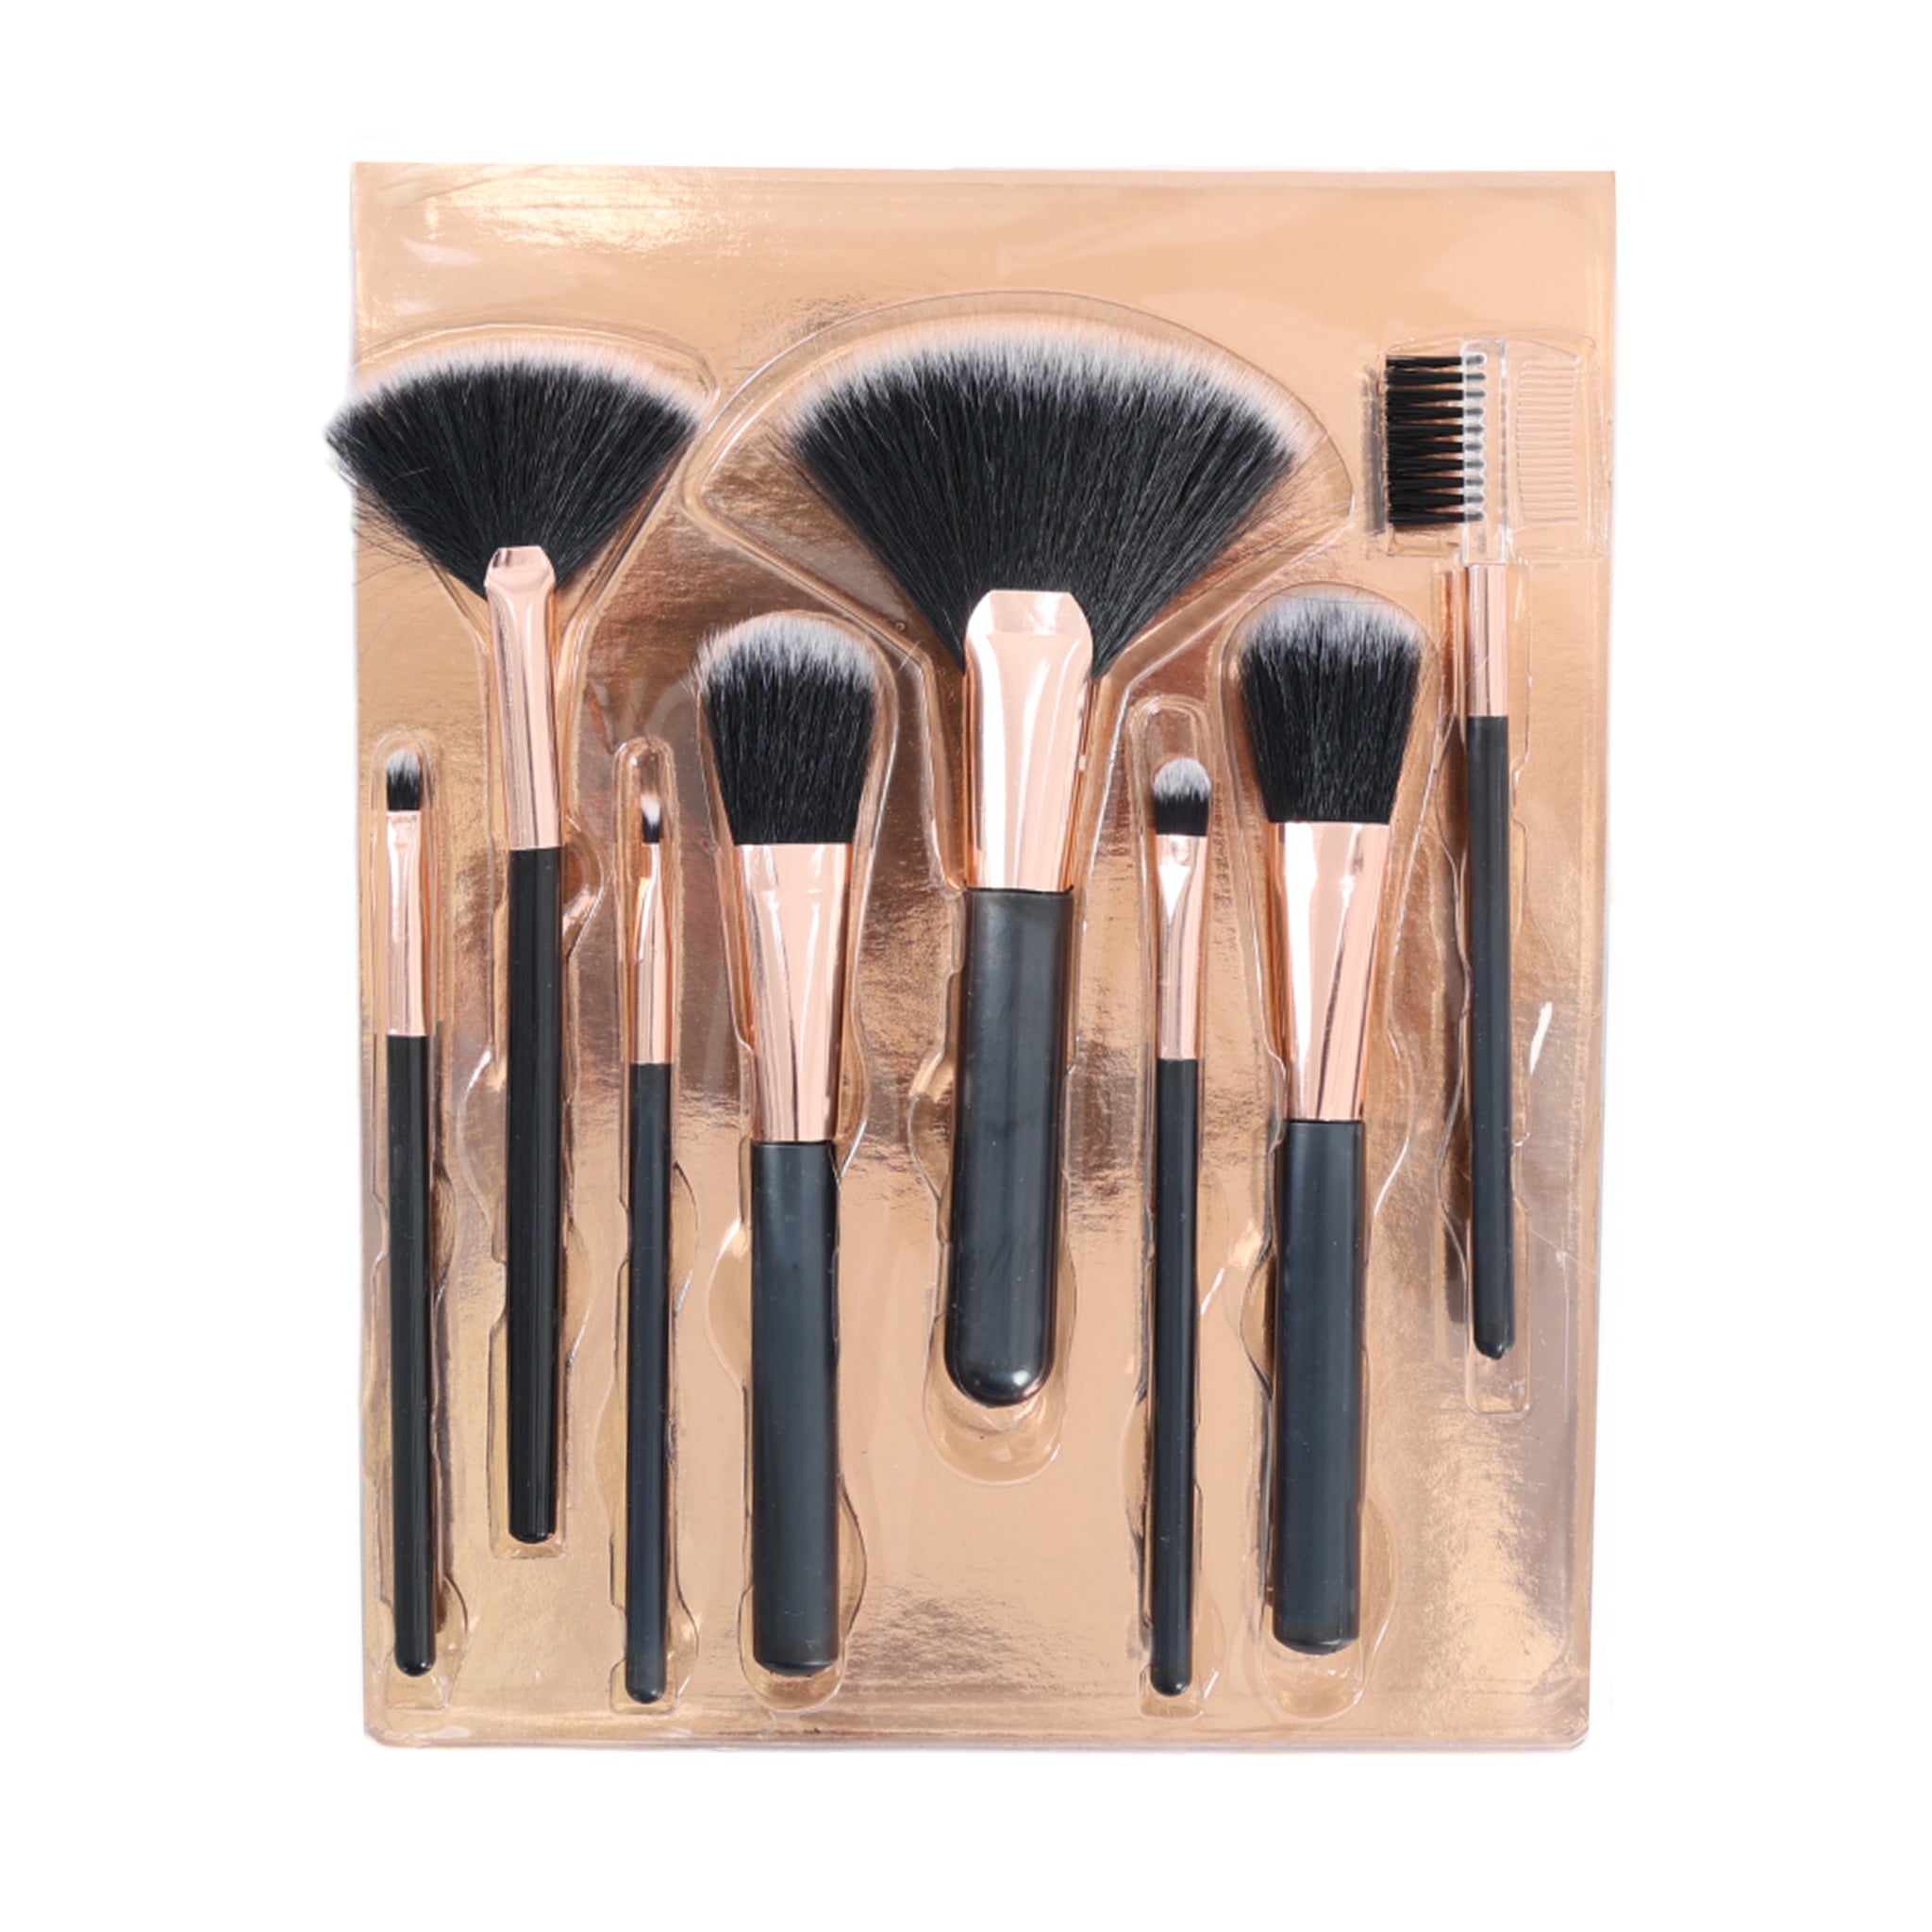 Nine Beauty Face Brush Set 8 pieces